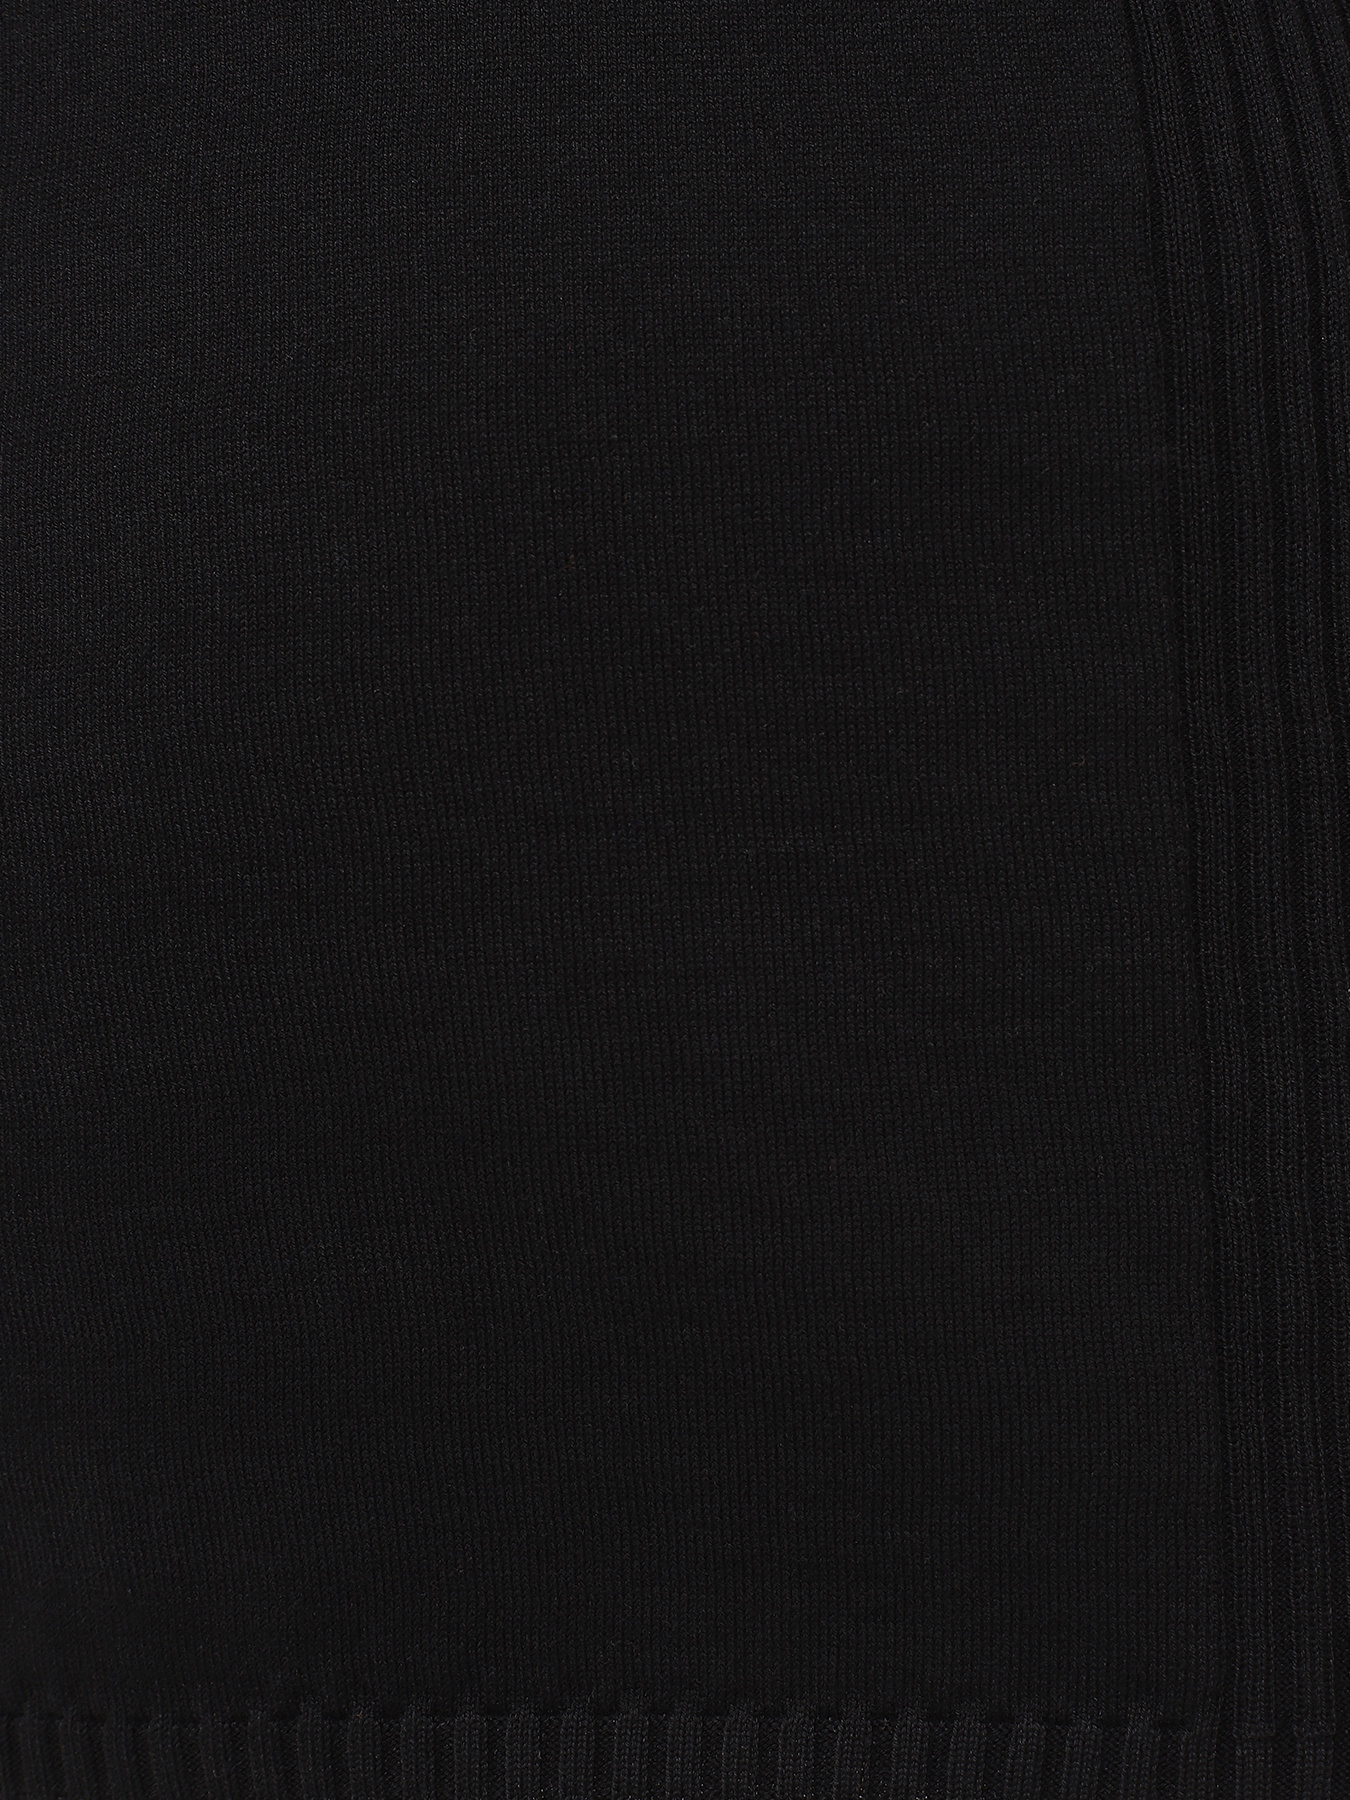 Джемпер с коротким рукавом Trussardi 435520-045, цвет черный, размер 52-54 - фото 4